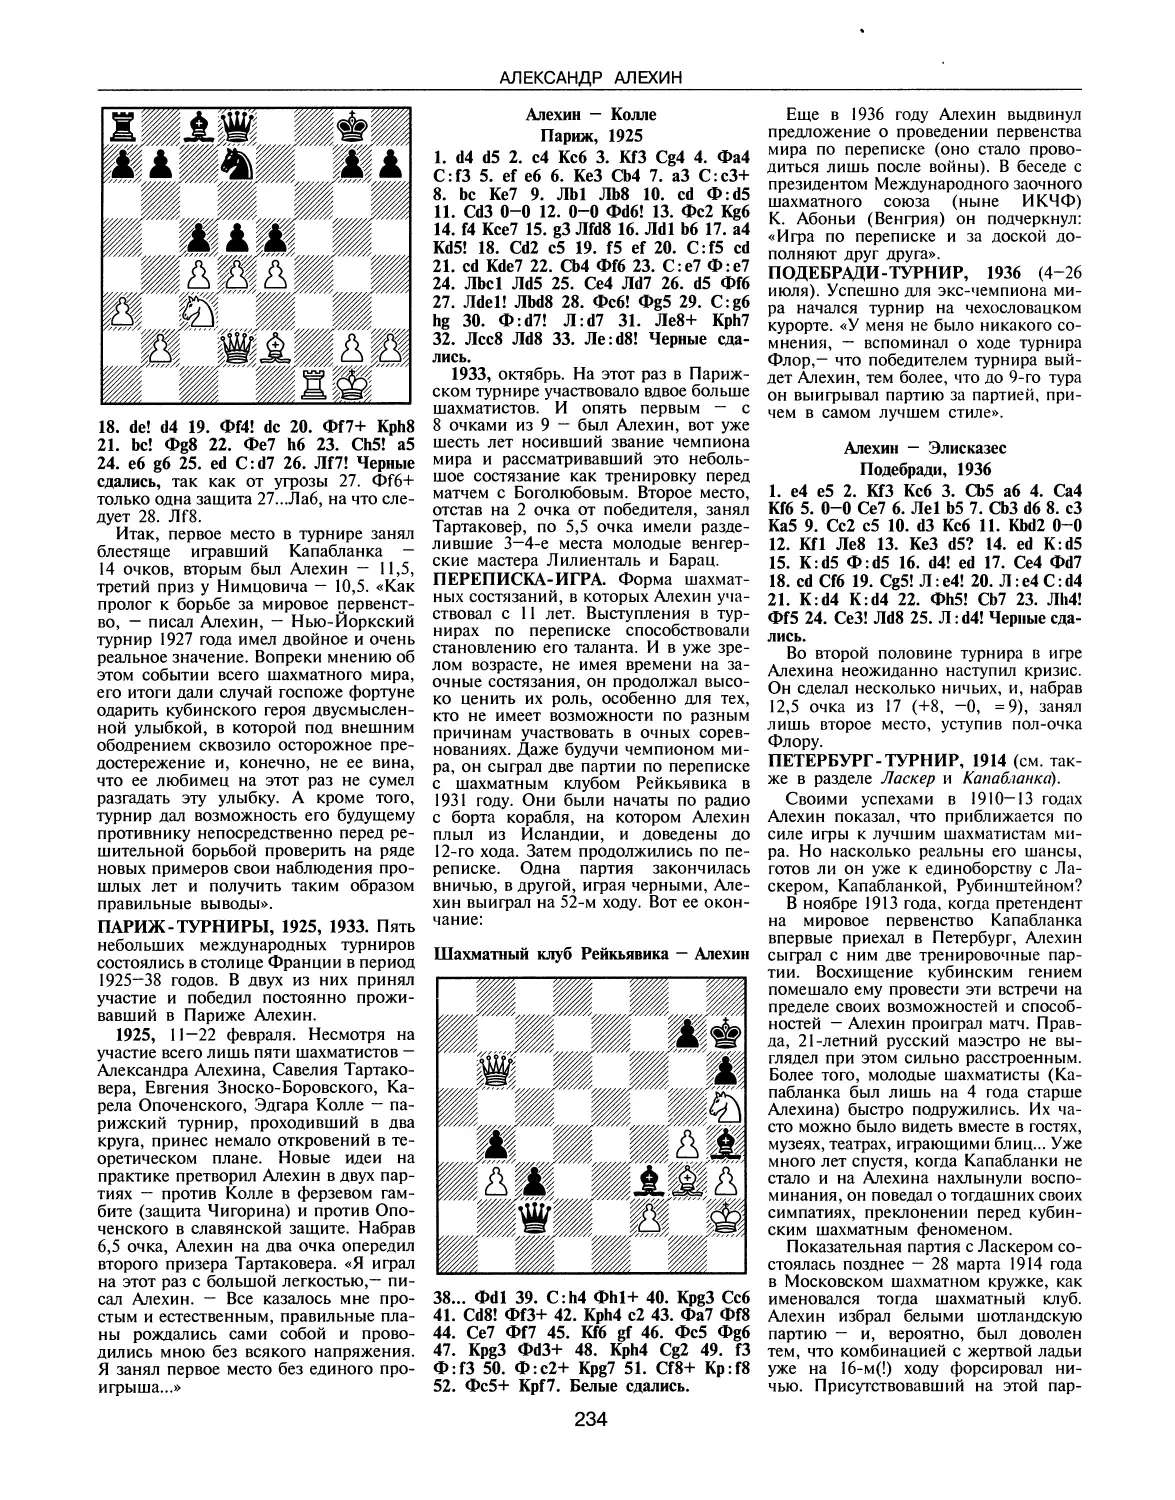 Париж-турниры, 1925, 1933
Переписка-игра
Петербург-турнир, 1914